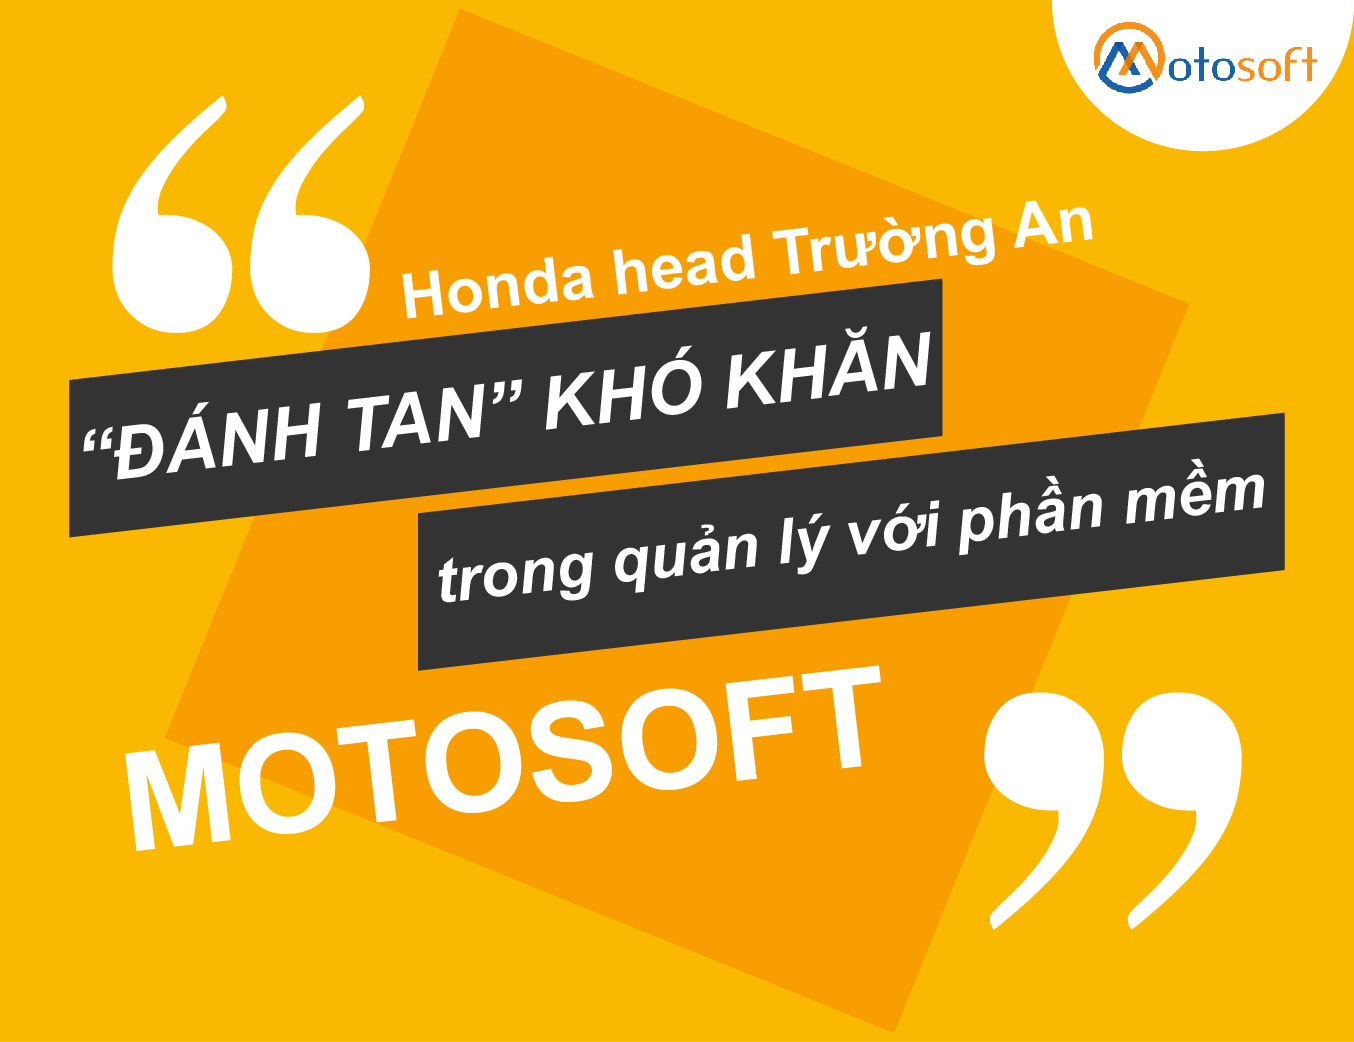 Đánh tan khó khăn bạn đang gặp phải trong quản lý chuỗi cửa hàng xe máy với phần mềm Motosoft